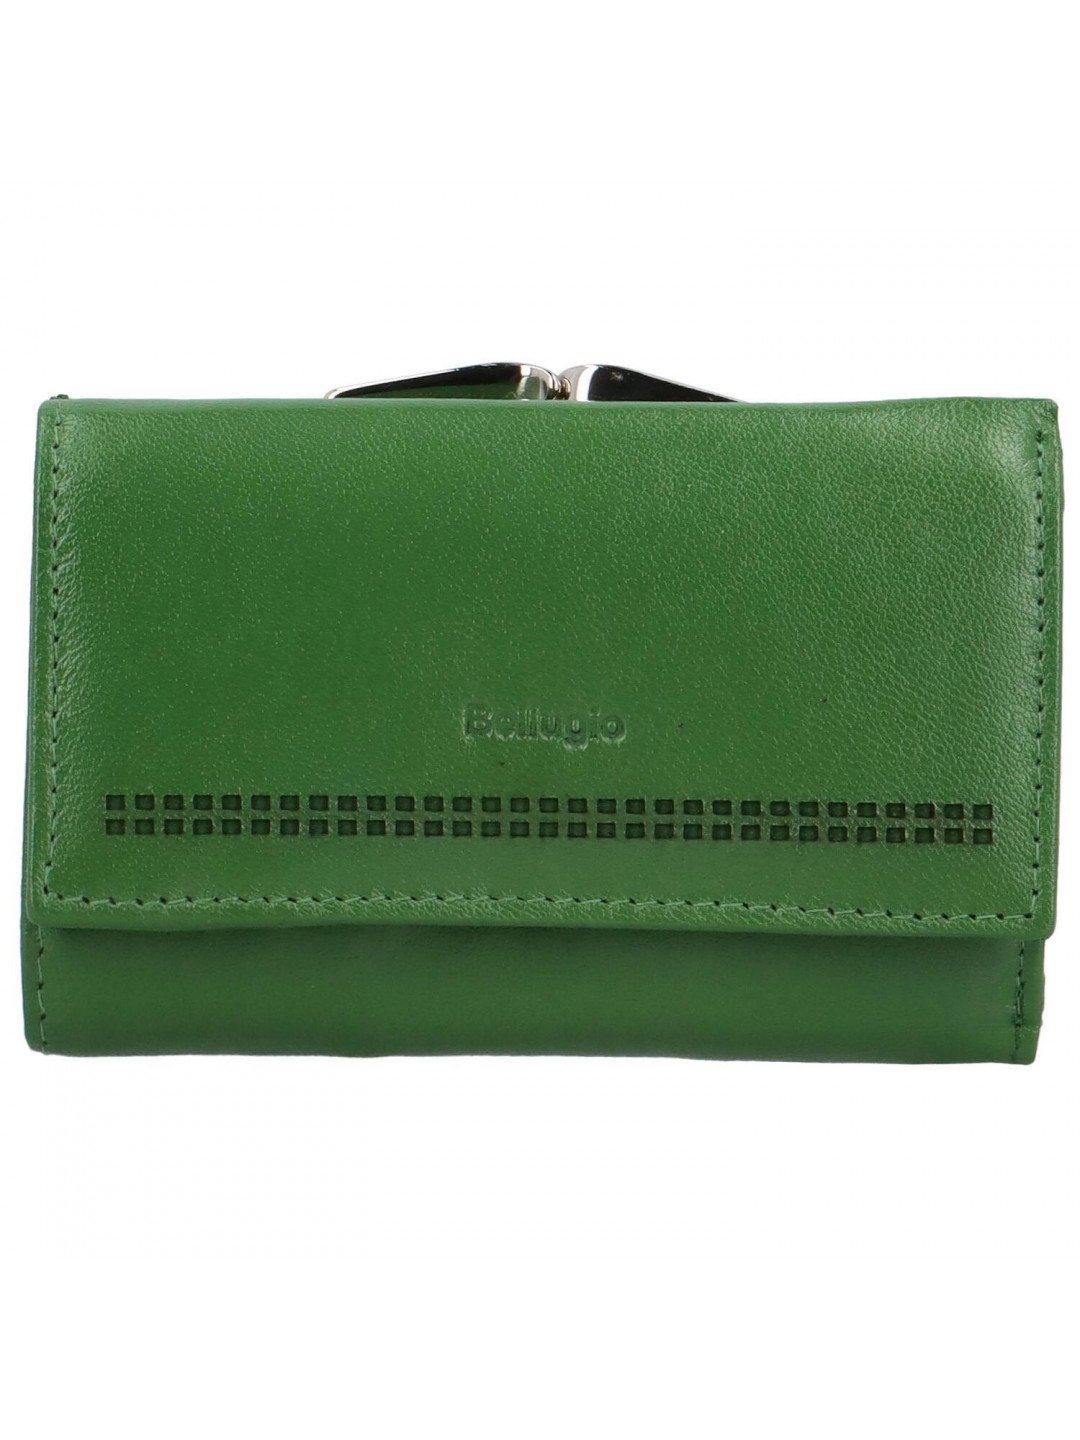 Dámská kožená peněženka Bellugio Ambra tmavě zelená